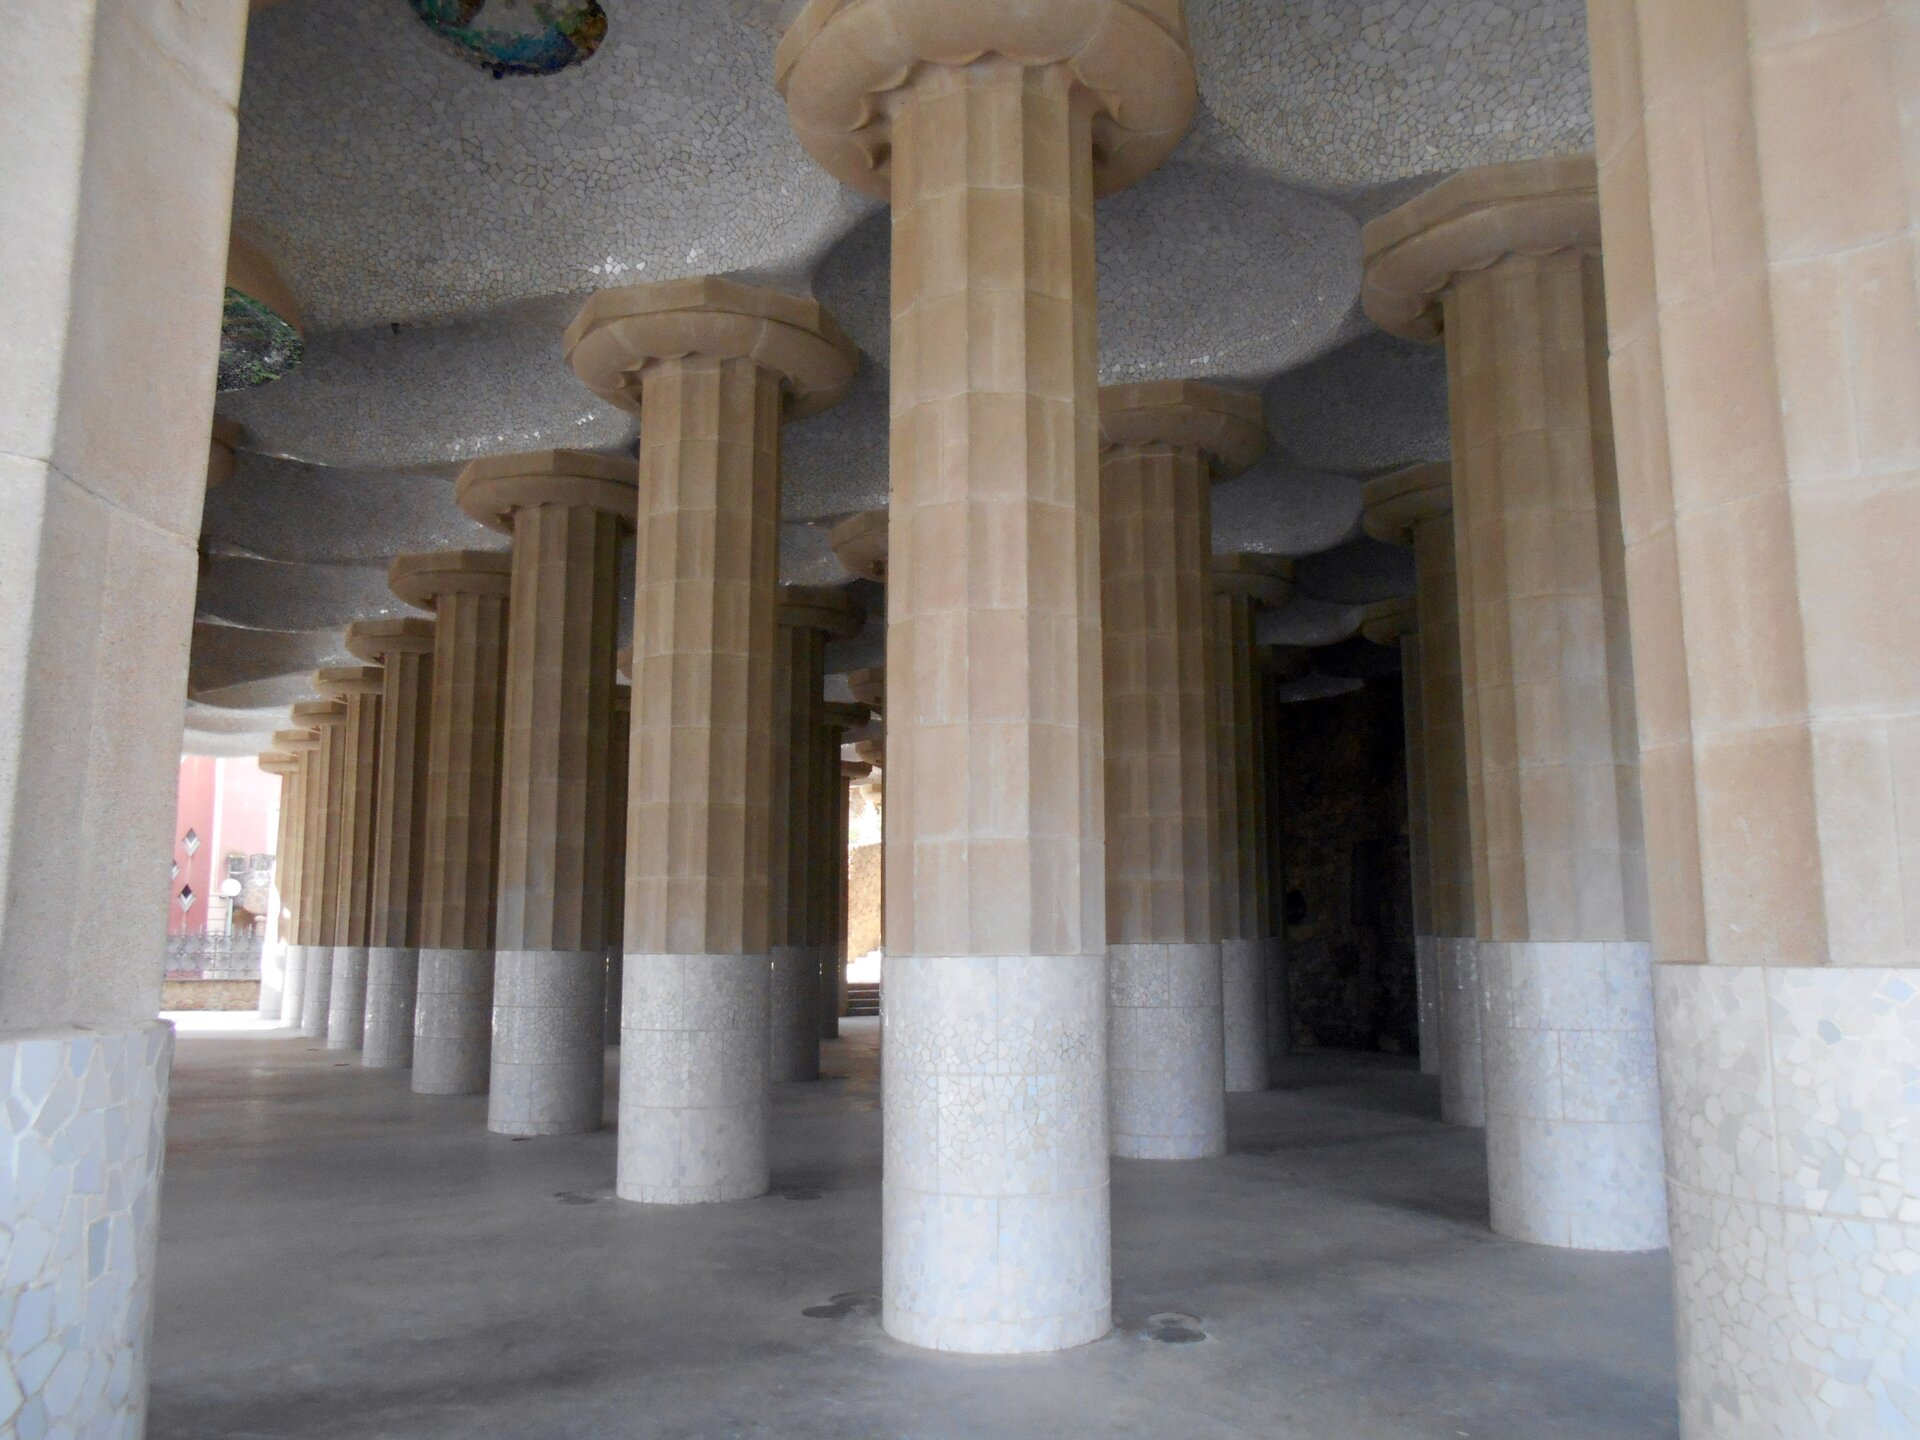 Ilustracja o kształcie poziomego prostokąta przedstawia kolumny w Sali Hypostylowej w Parku Güell, zaprojektowanej przez Gaudiego. Ustawione są w rzędach, nie posiadają bazy, a ich trzony są mocno żłobione. U góry zakończone są szeroką głowicą w kształcie koła. Dolna część kolumn jest w kolorze białym. Podtrzymywany strop wykonany jest z terakoty. 